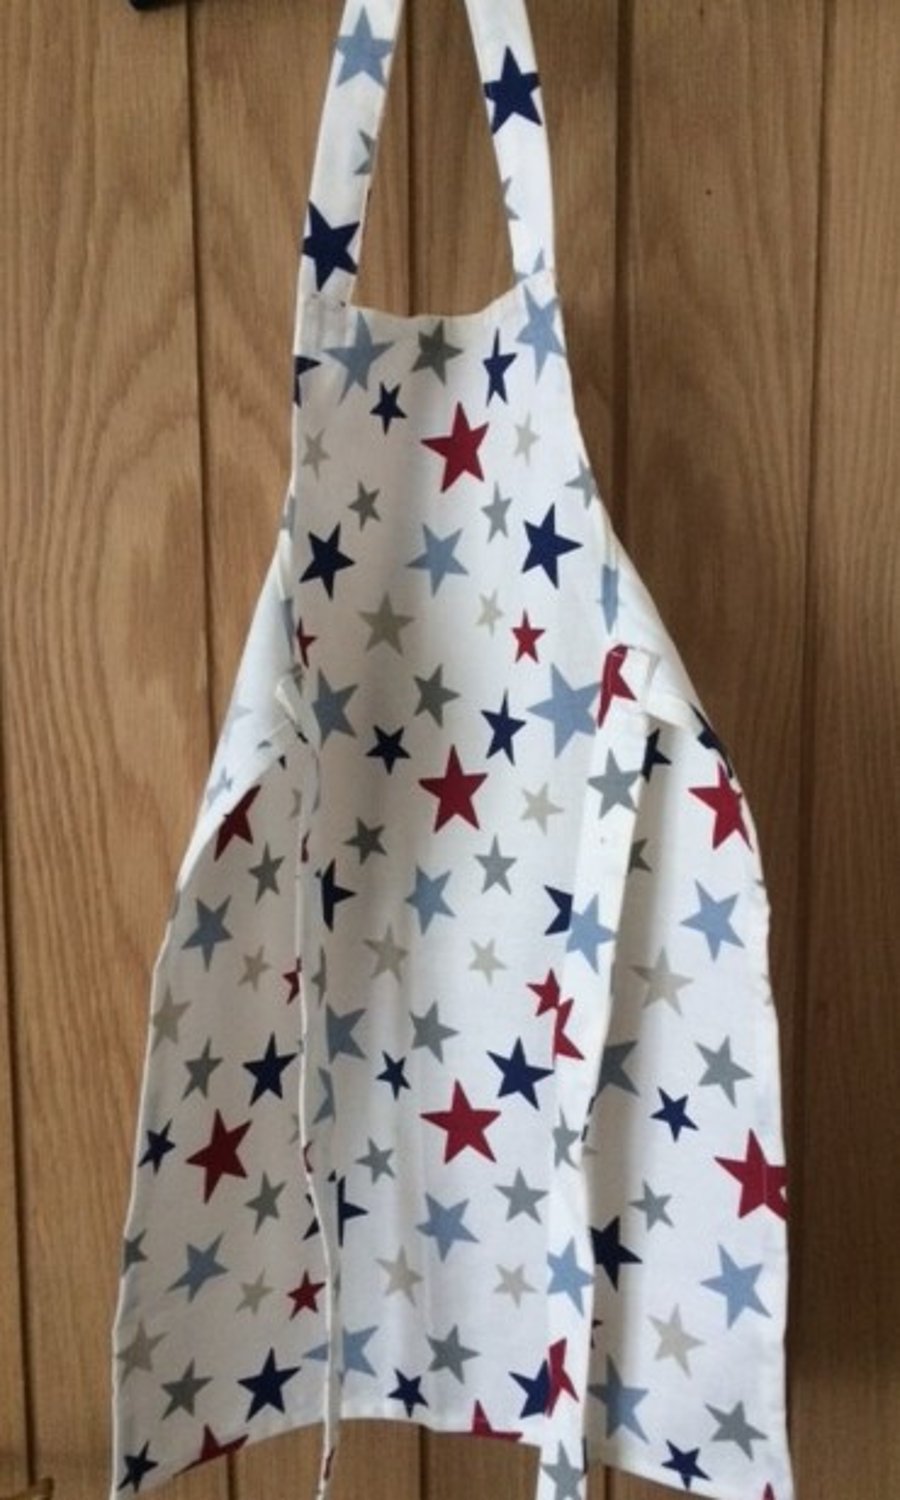 Children's cotton apron in a multi-coloured star pattern